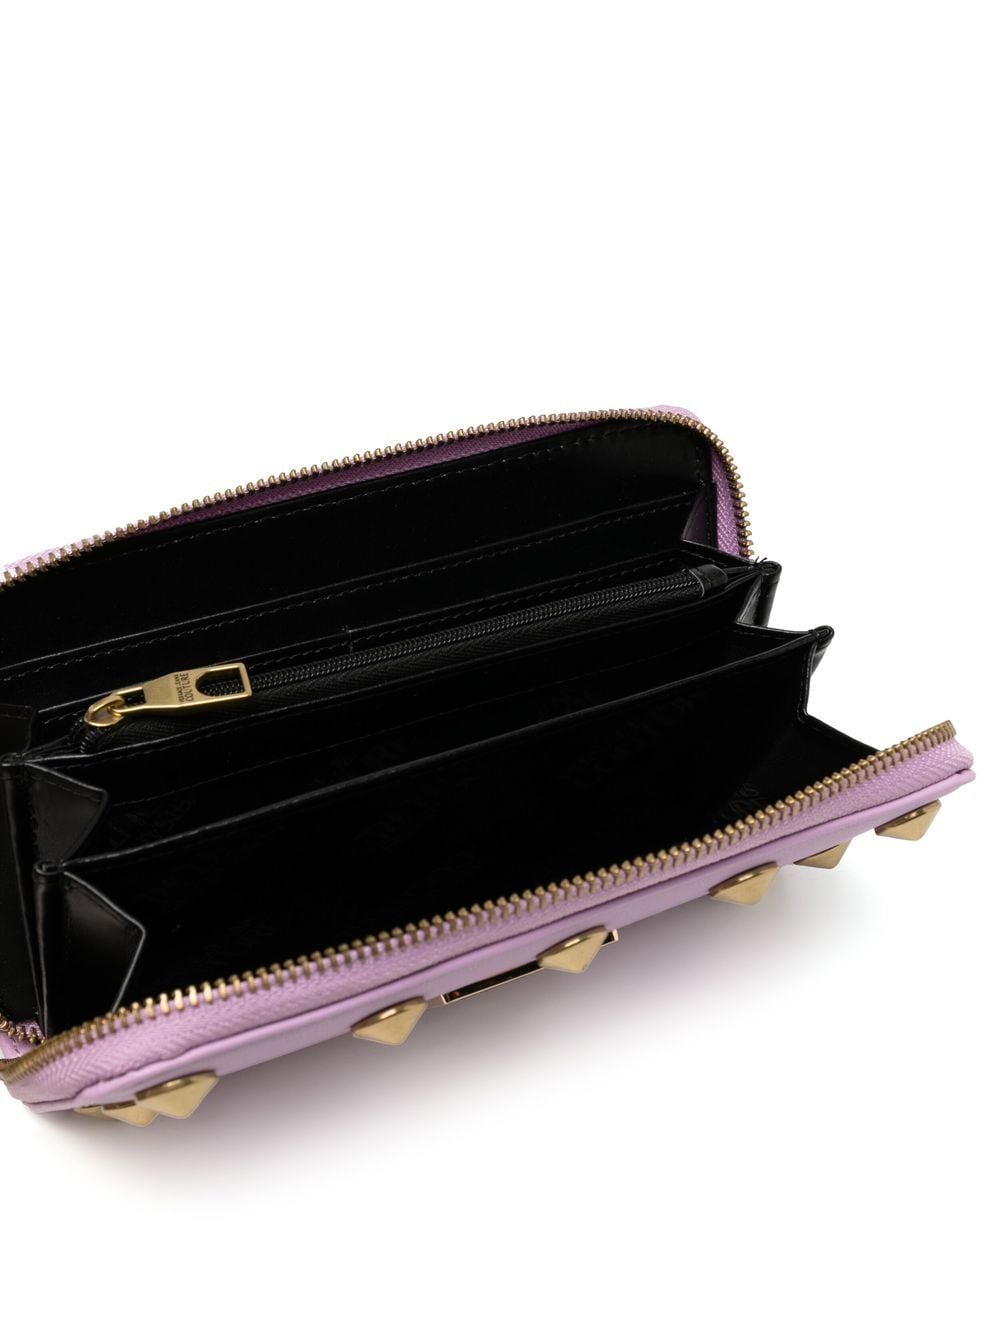 VERSACE JEANS COUTURE WOMEN Studded leather wallet Purple - MAISONDEFASHION.COM